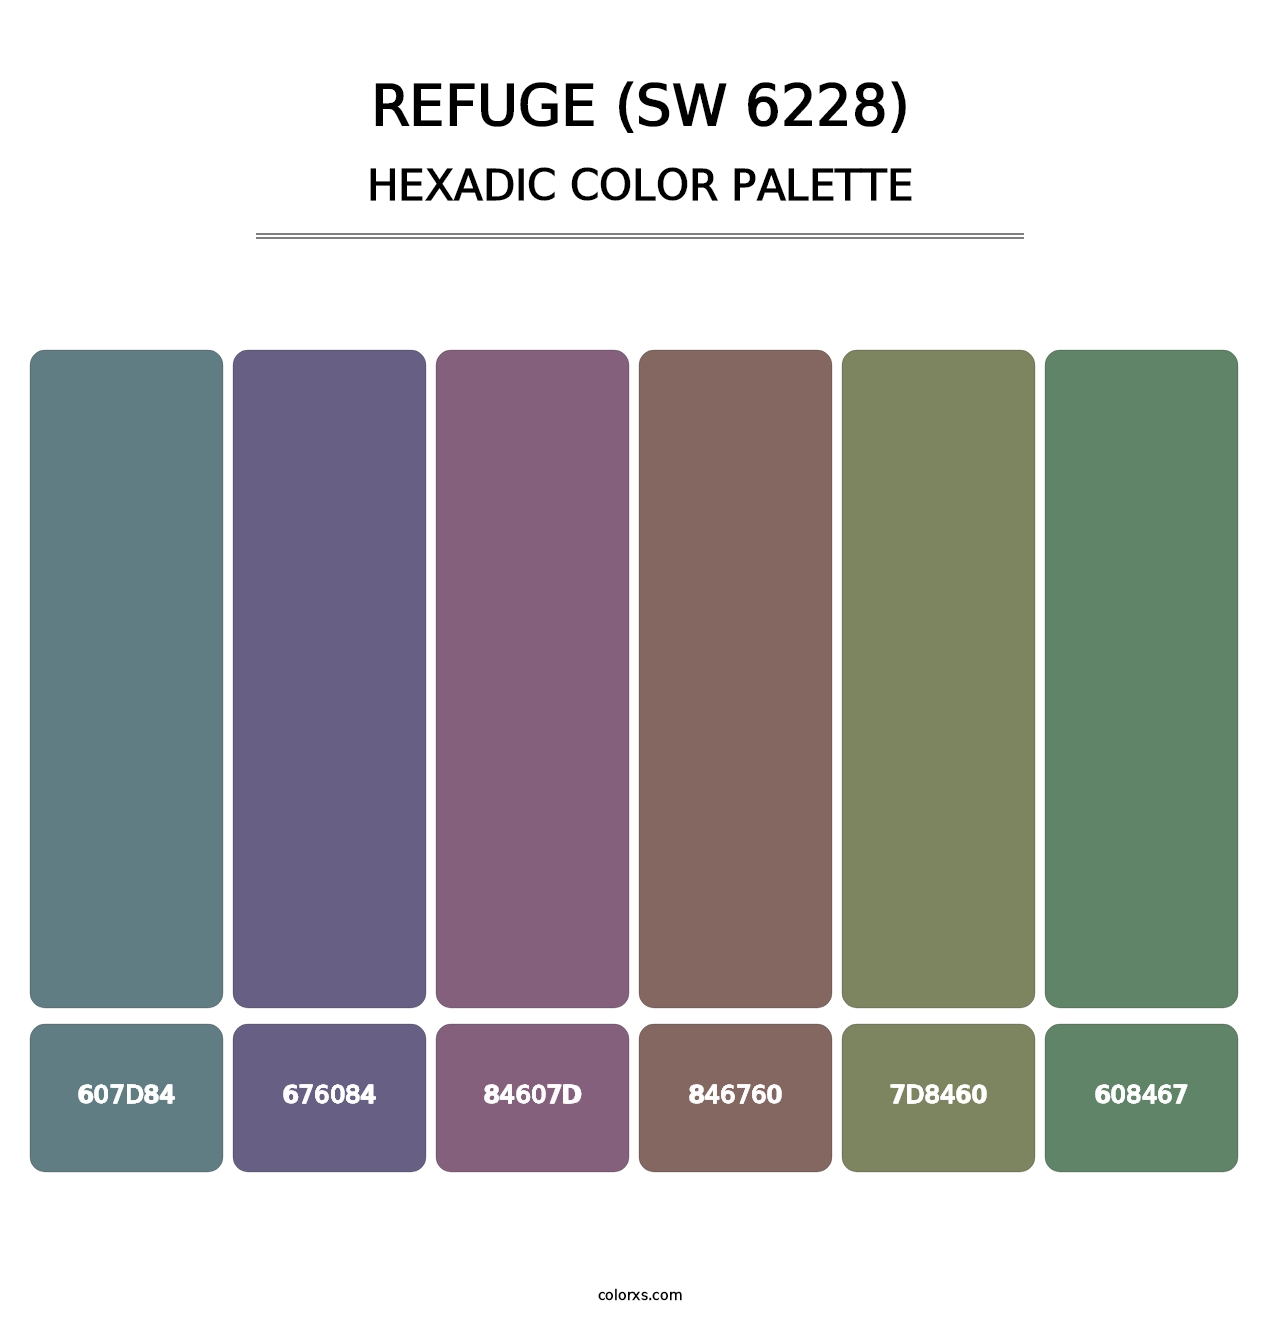 Refuge (SW 6228) - Hexadic Color Palette